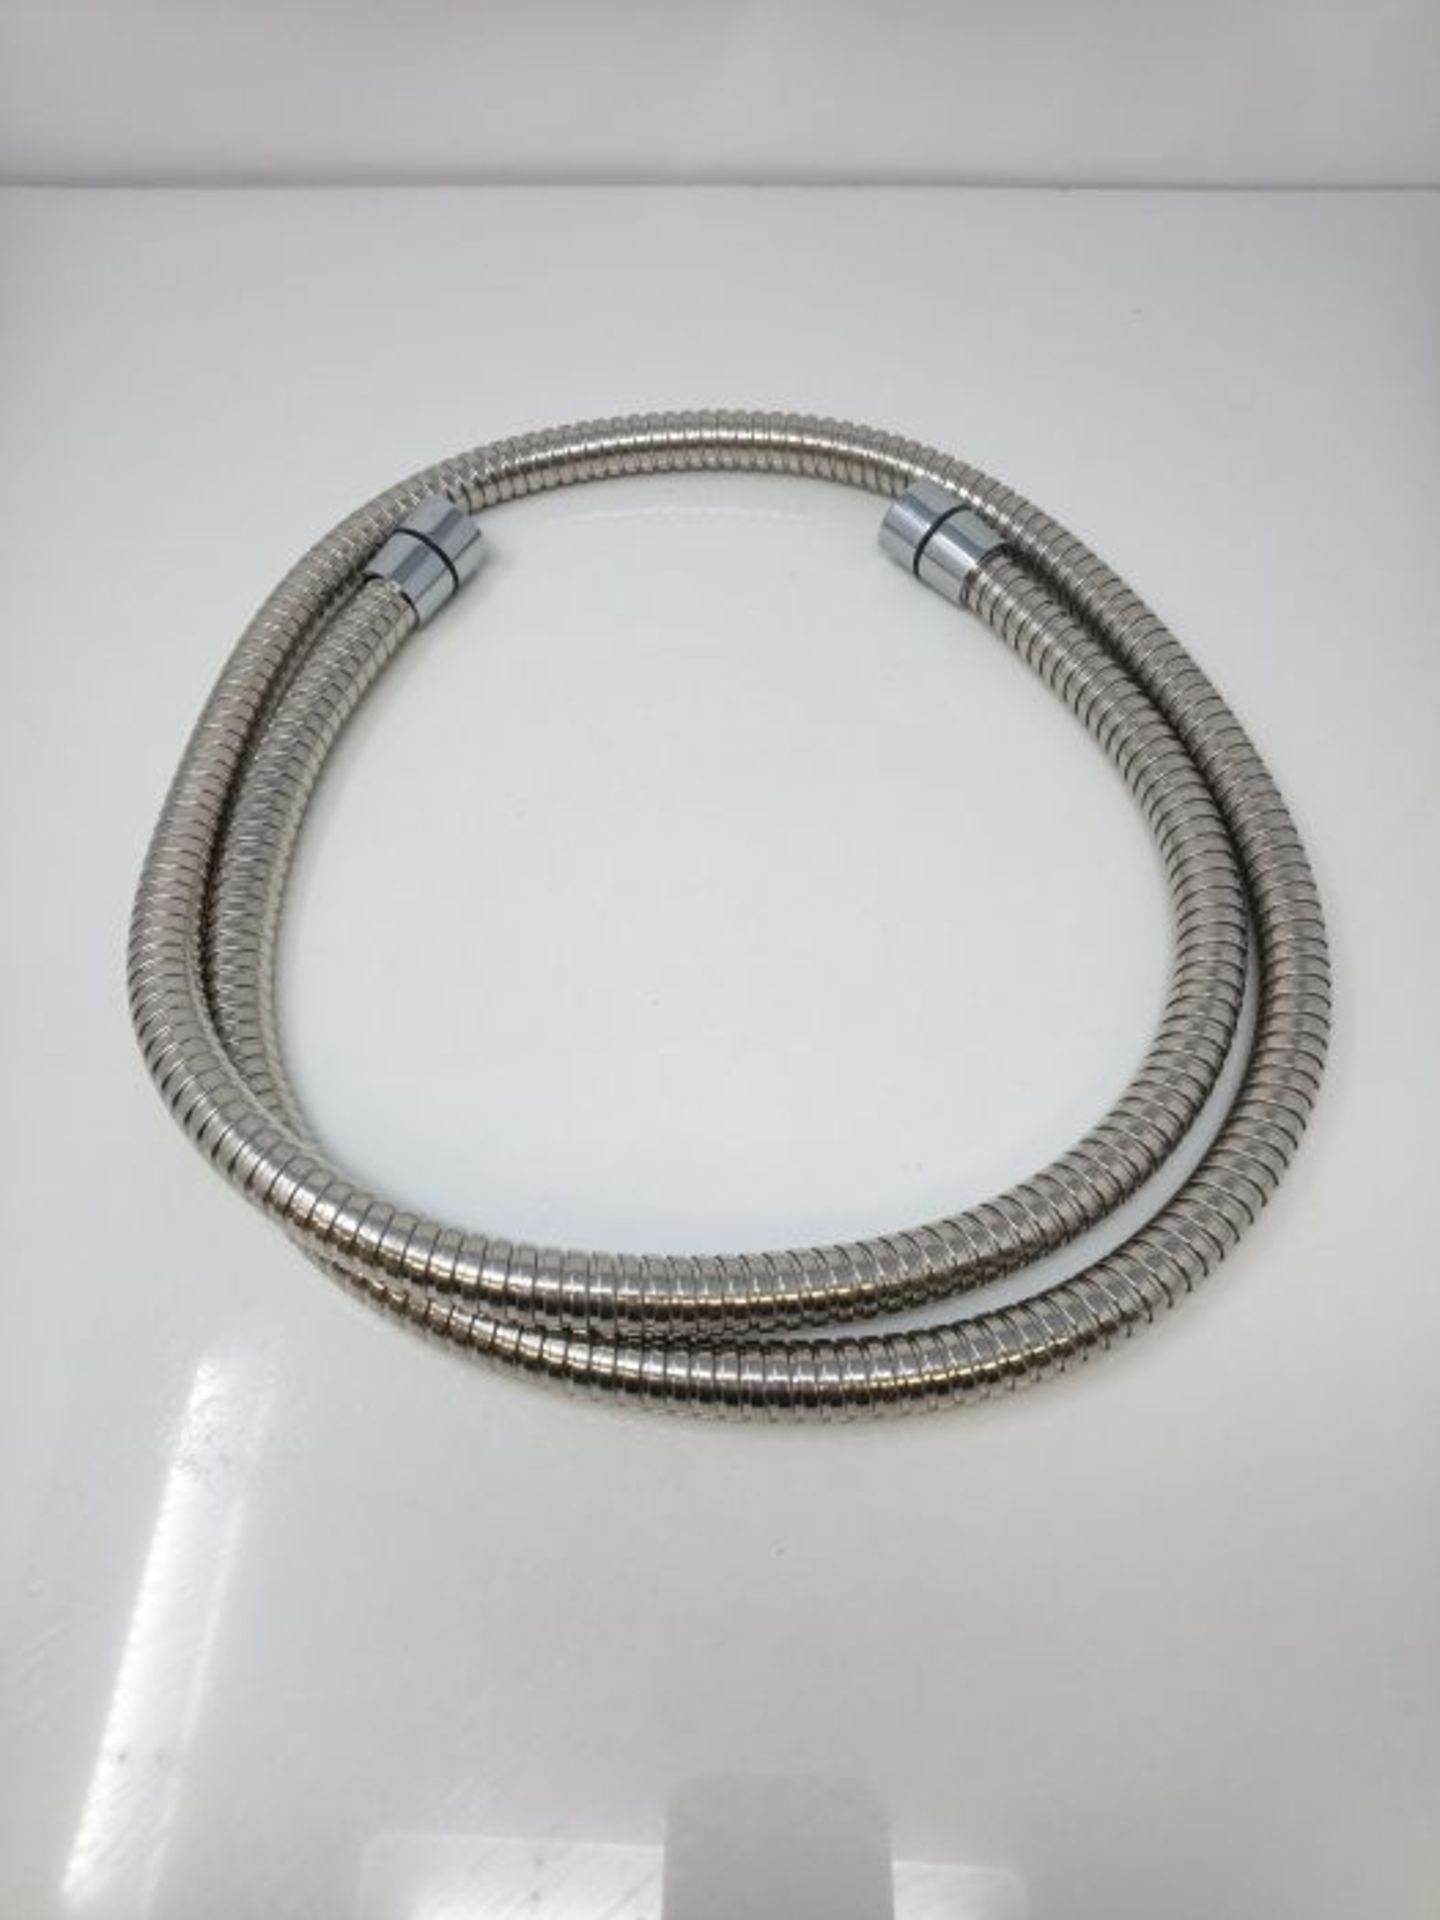 Stainless Steel flexible shower/bidet hose - Image 2 of 2